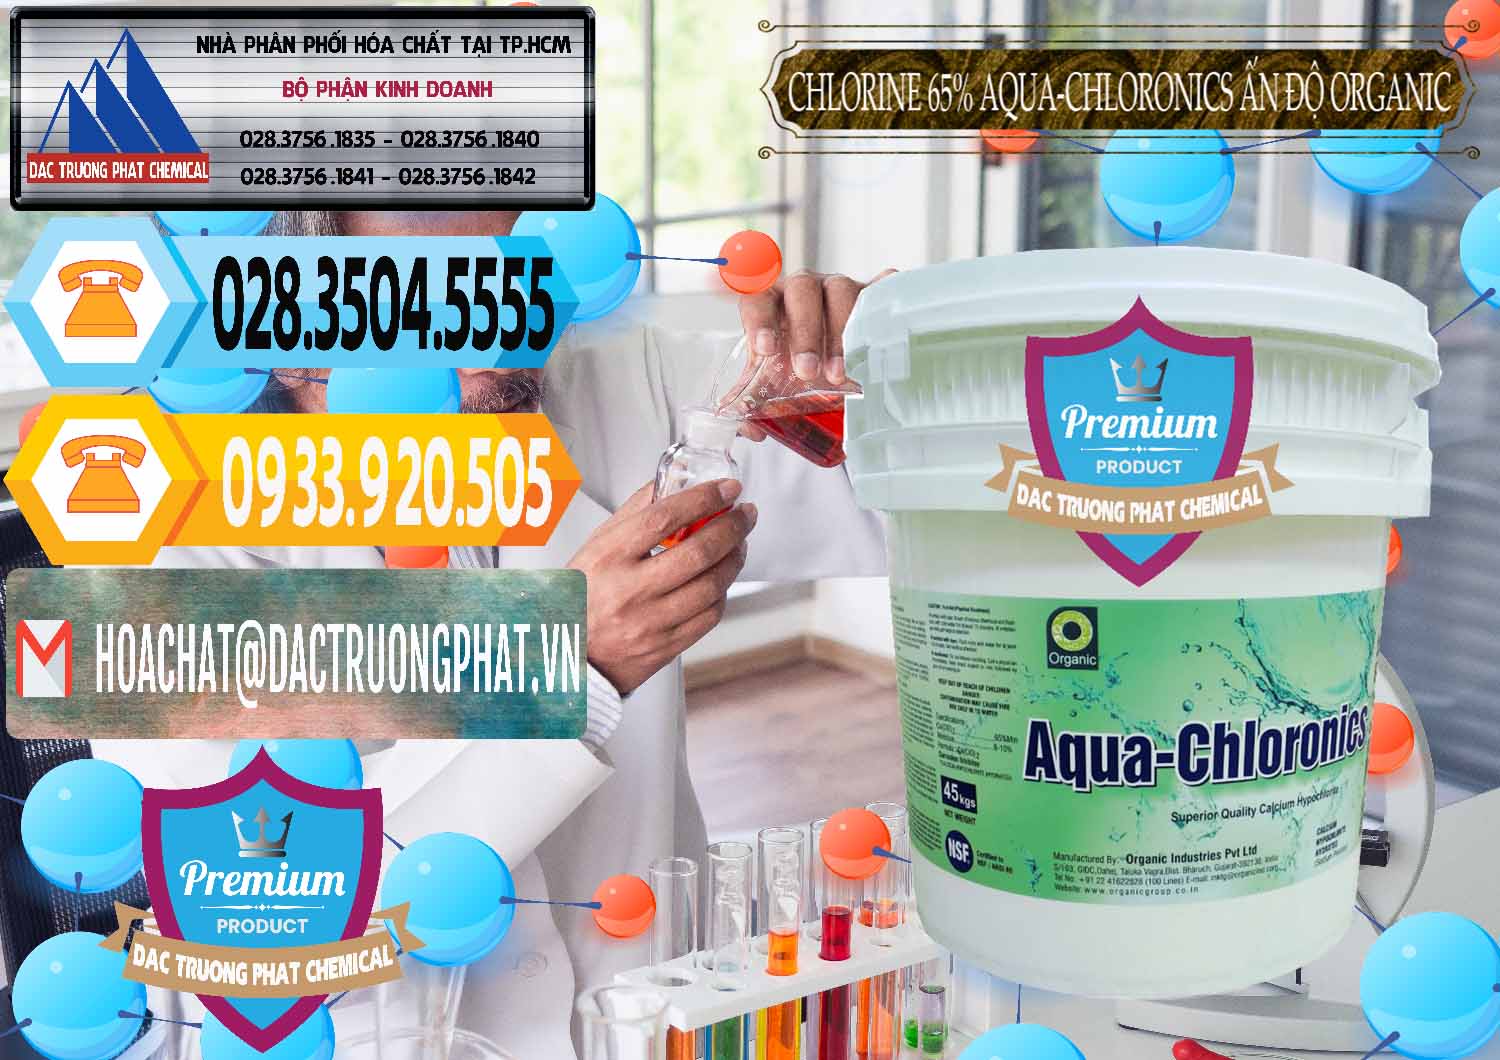 Công ty nhập khẩu và bán Chlorine – Clorin 65% Aqua-Chloronics Ấn Độ Organic India - 0210 - Phân phối & cung ứng hóa chất tại TP.HCM - hoachattayrua.net